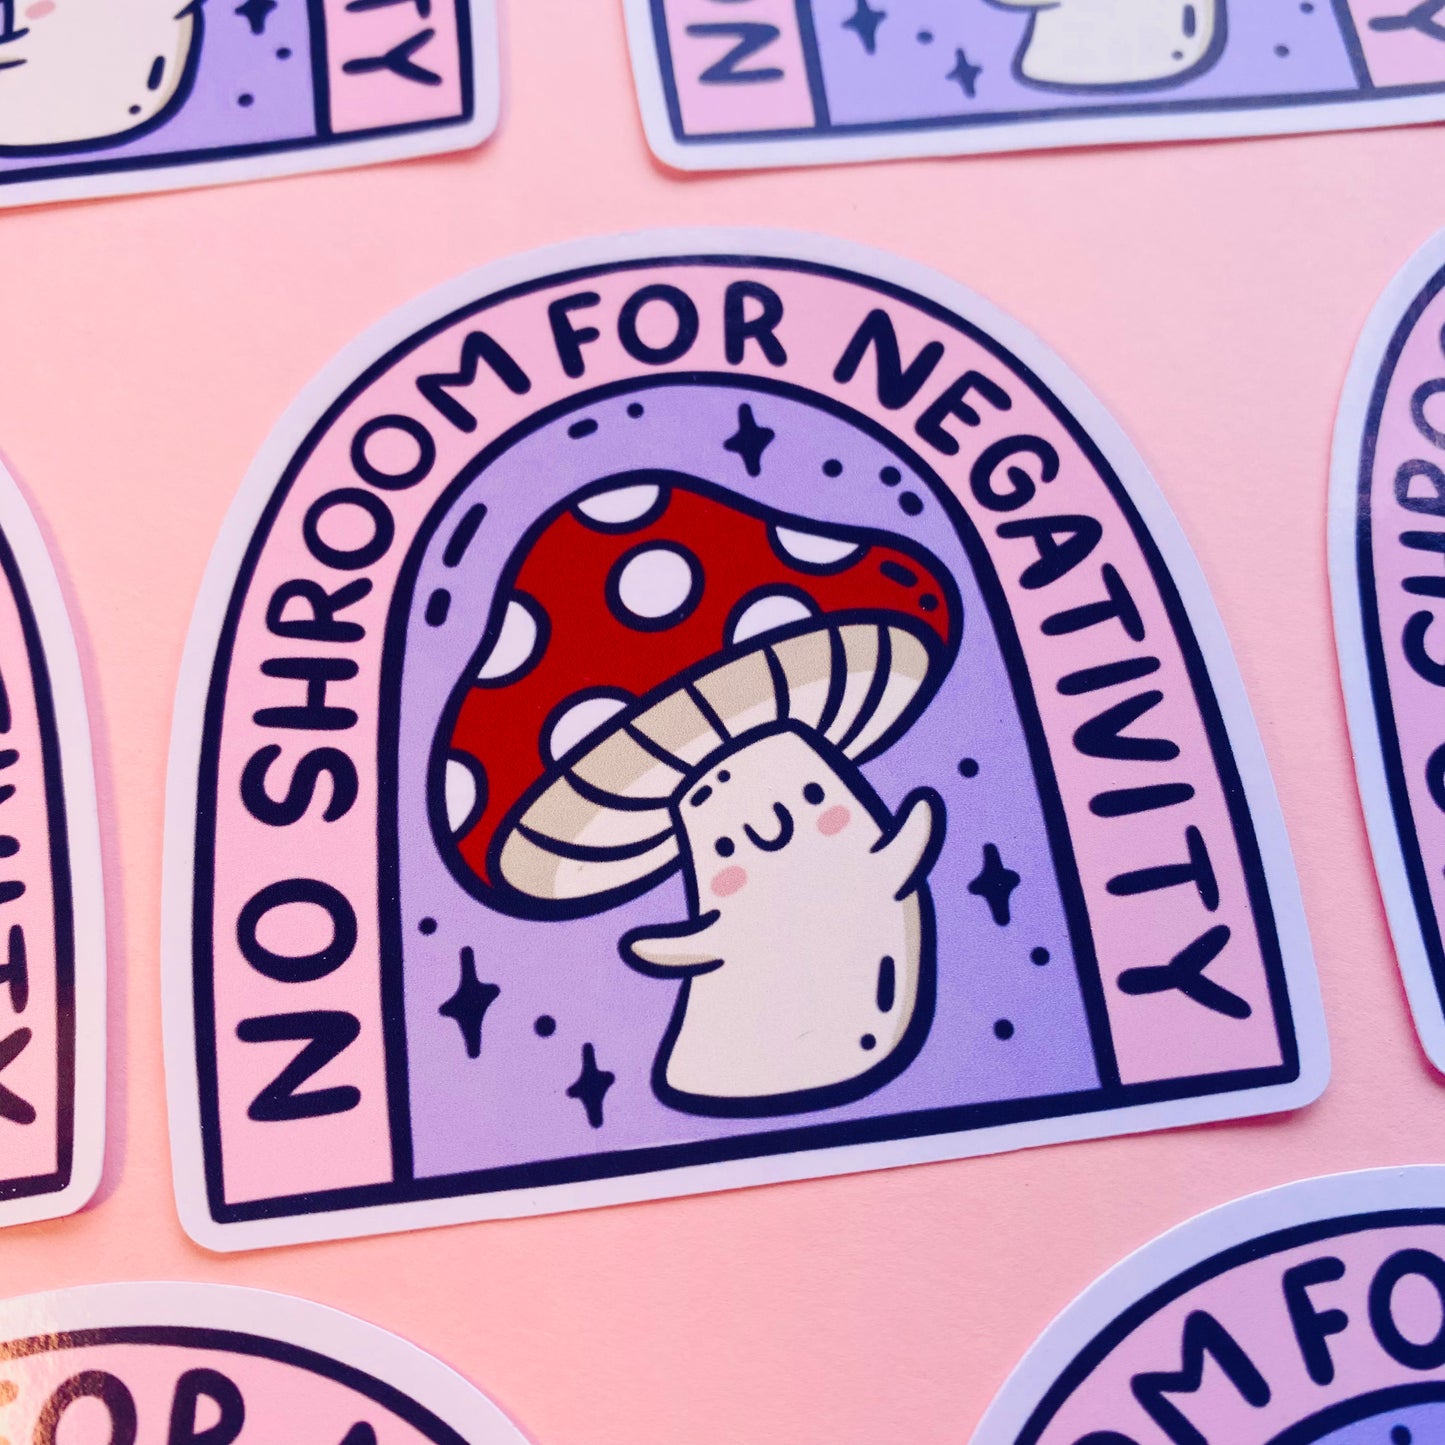 No Shroom For Negativity Sticker